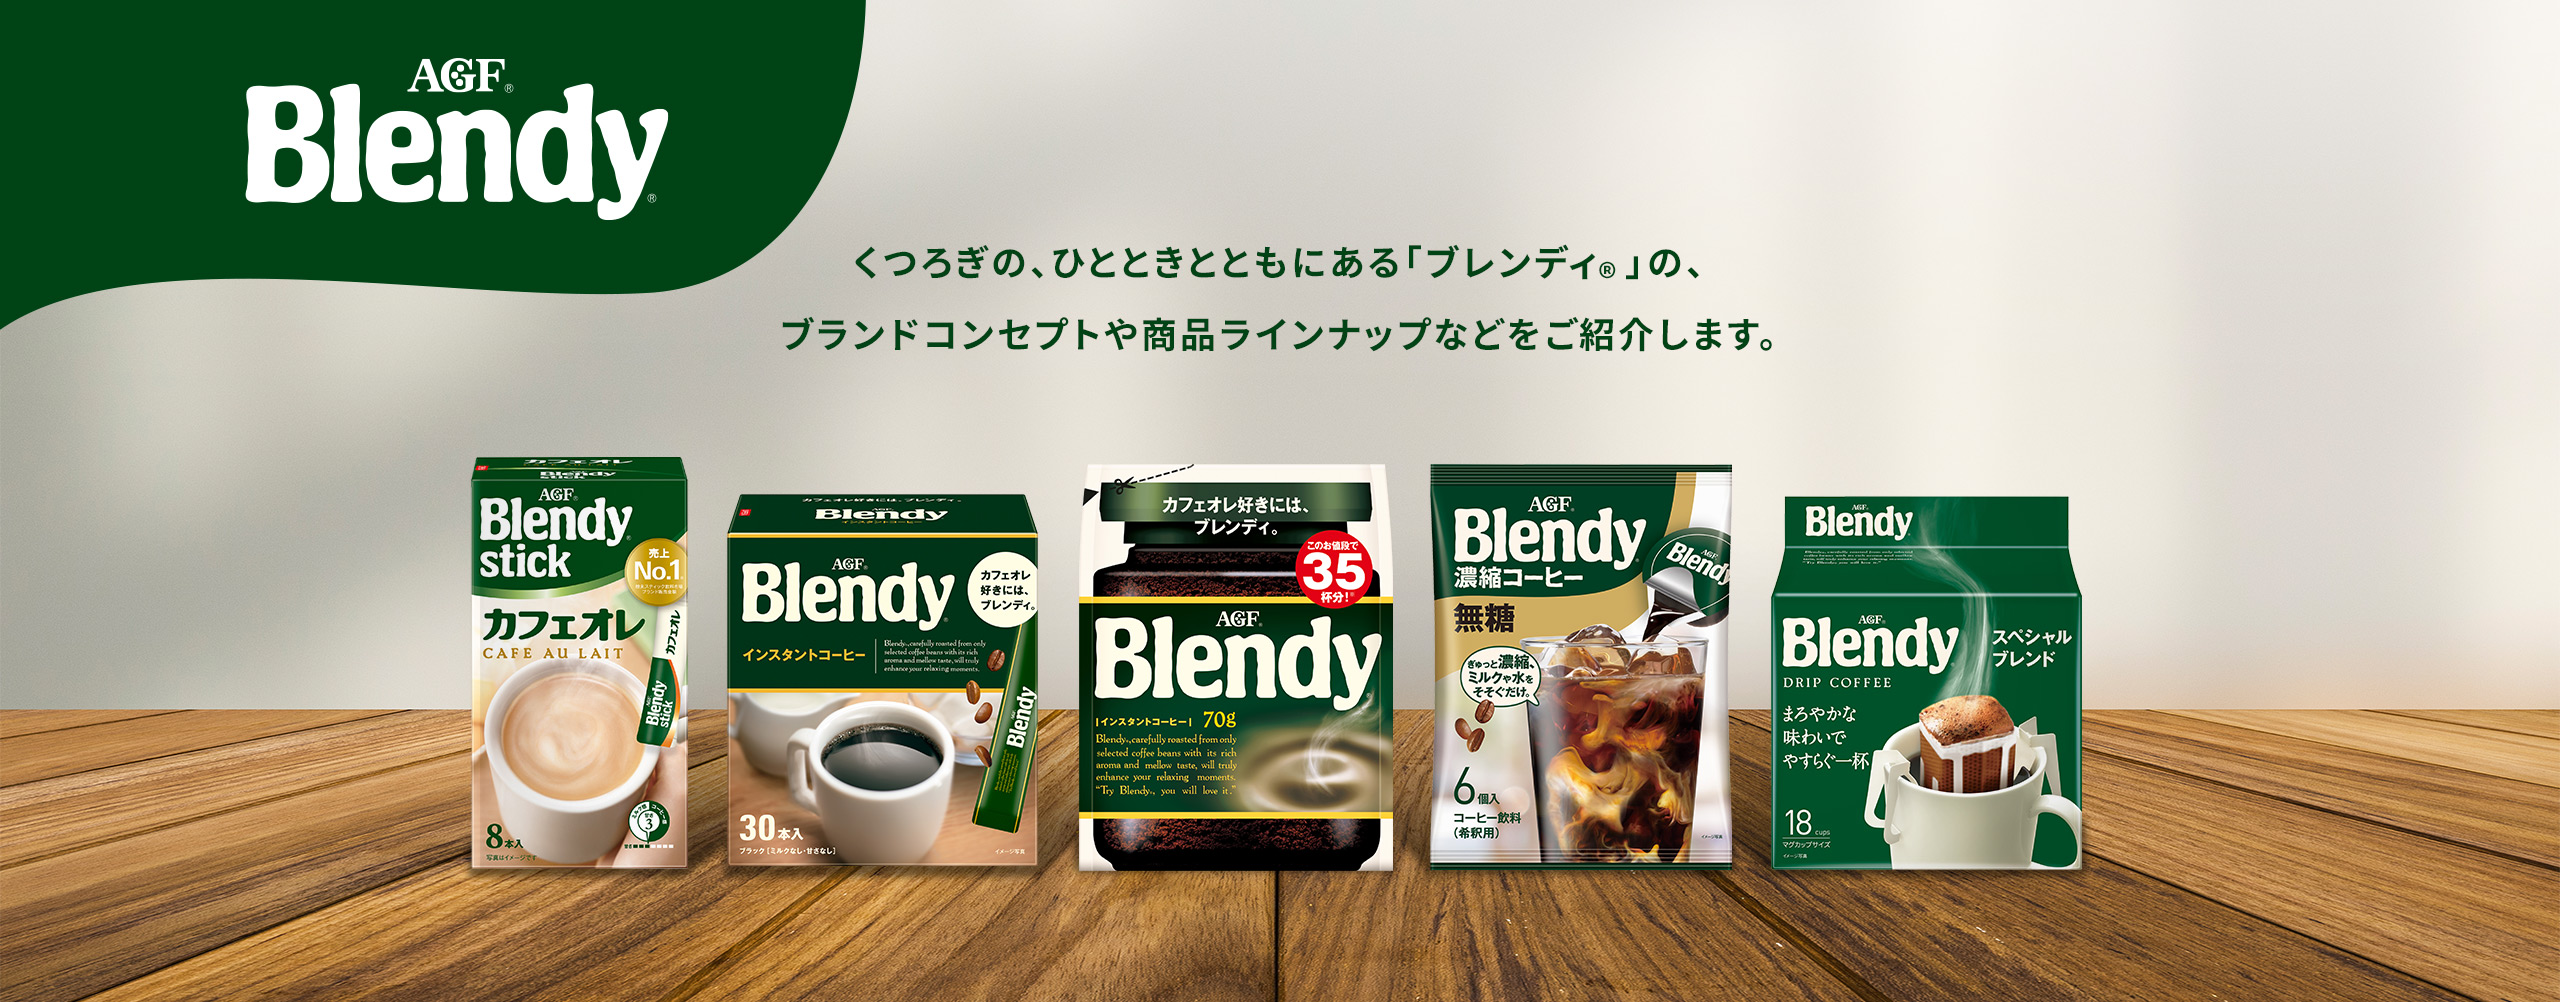 AGF Blendy® くつろぎの、ひとときとともにある〈ブレンディ®〉の、ブランドコンセプトや商品ラインナップなどをご紹介します。